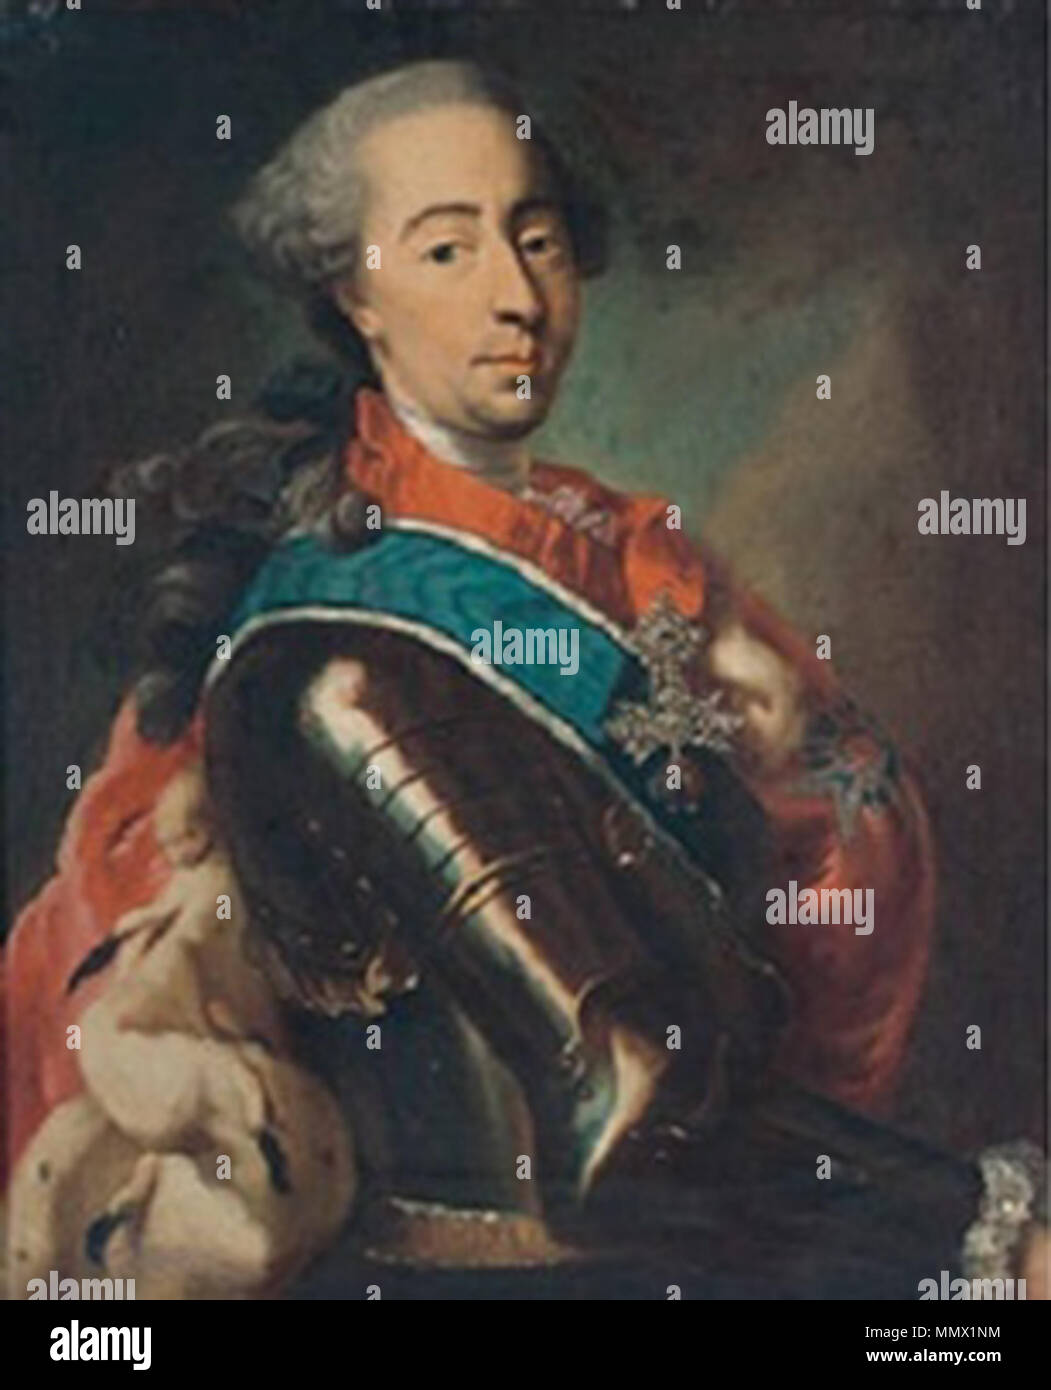 Desmarées, Kreis von - Porträt der Prinz von Bayern in der Rüstung Stockfoto